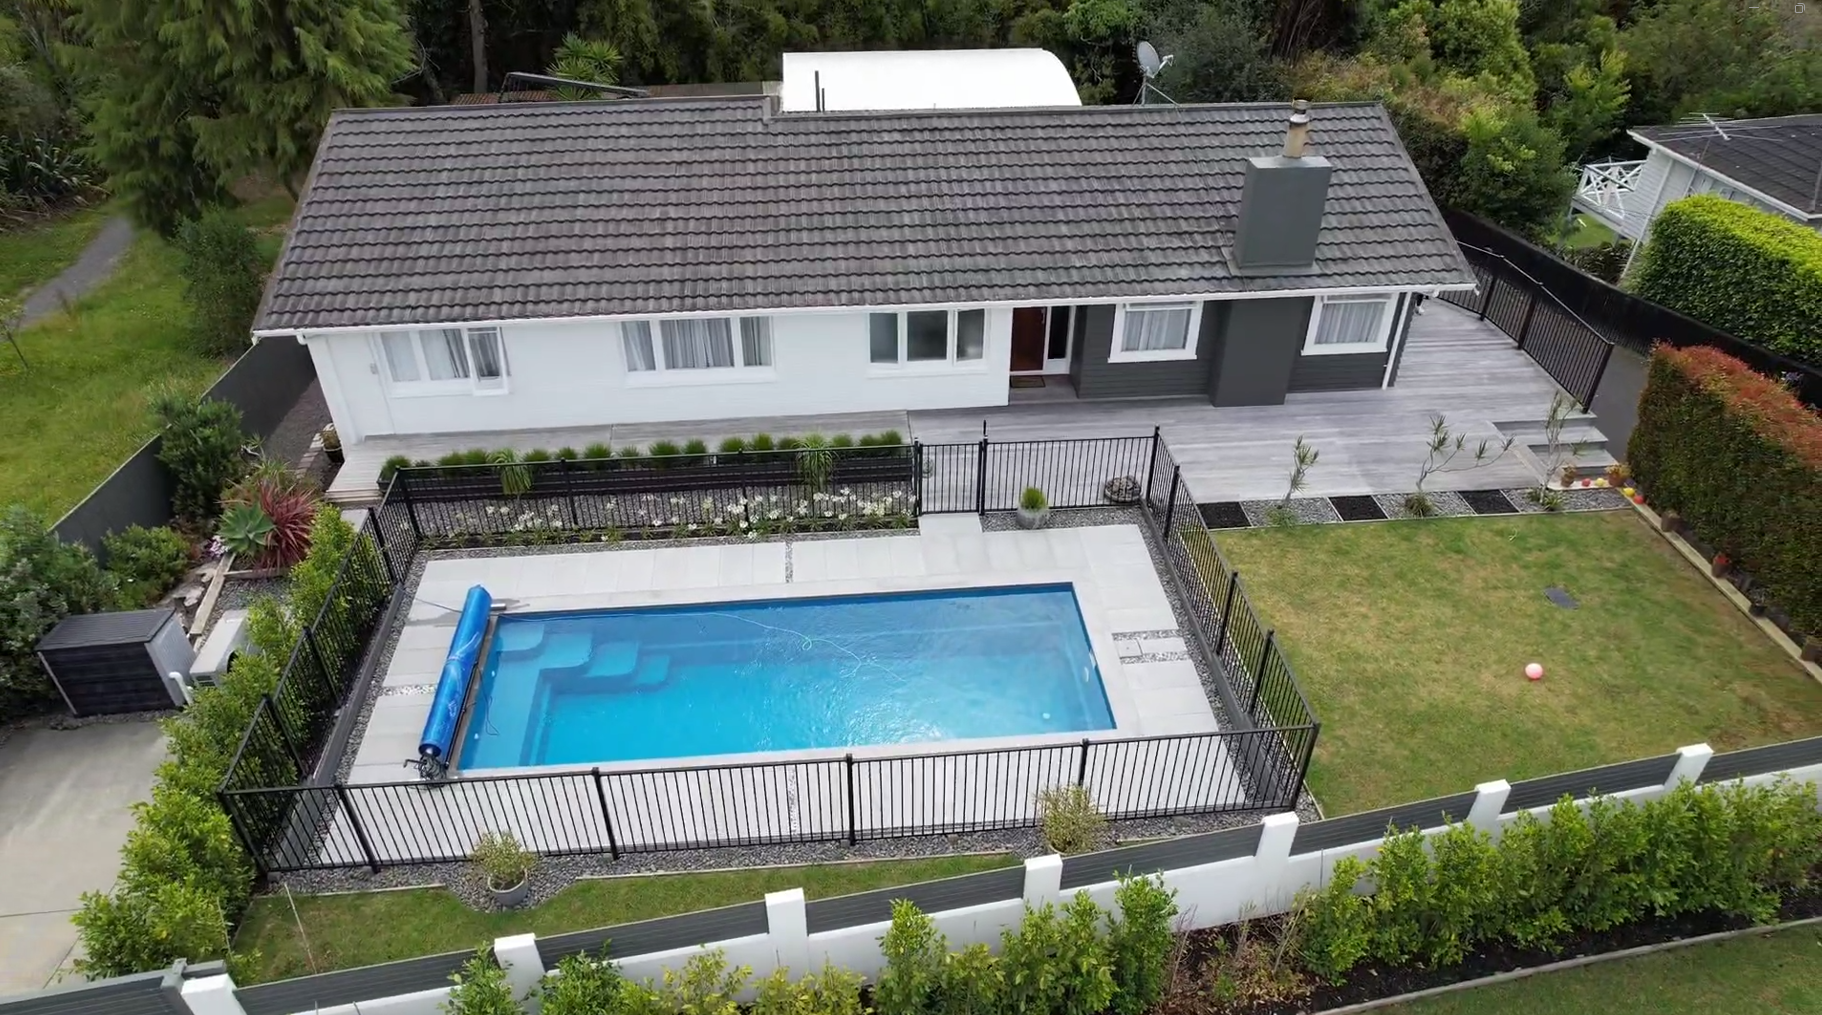 8x3 meter fibreglass swimming pool in the colour platinum